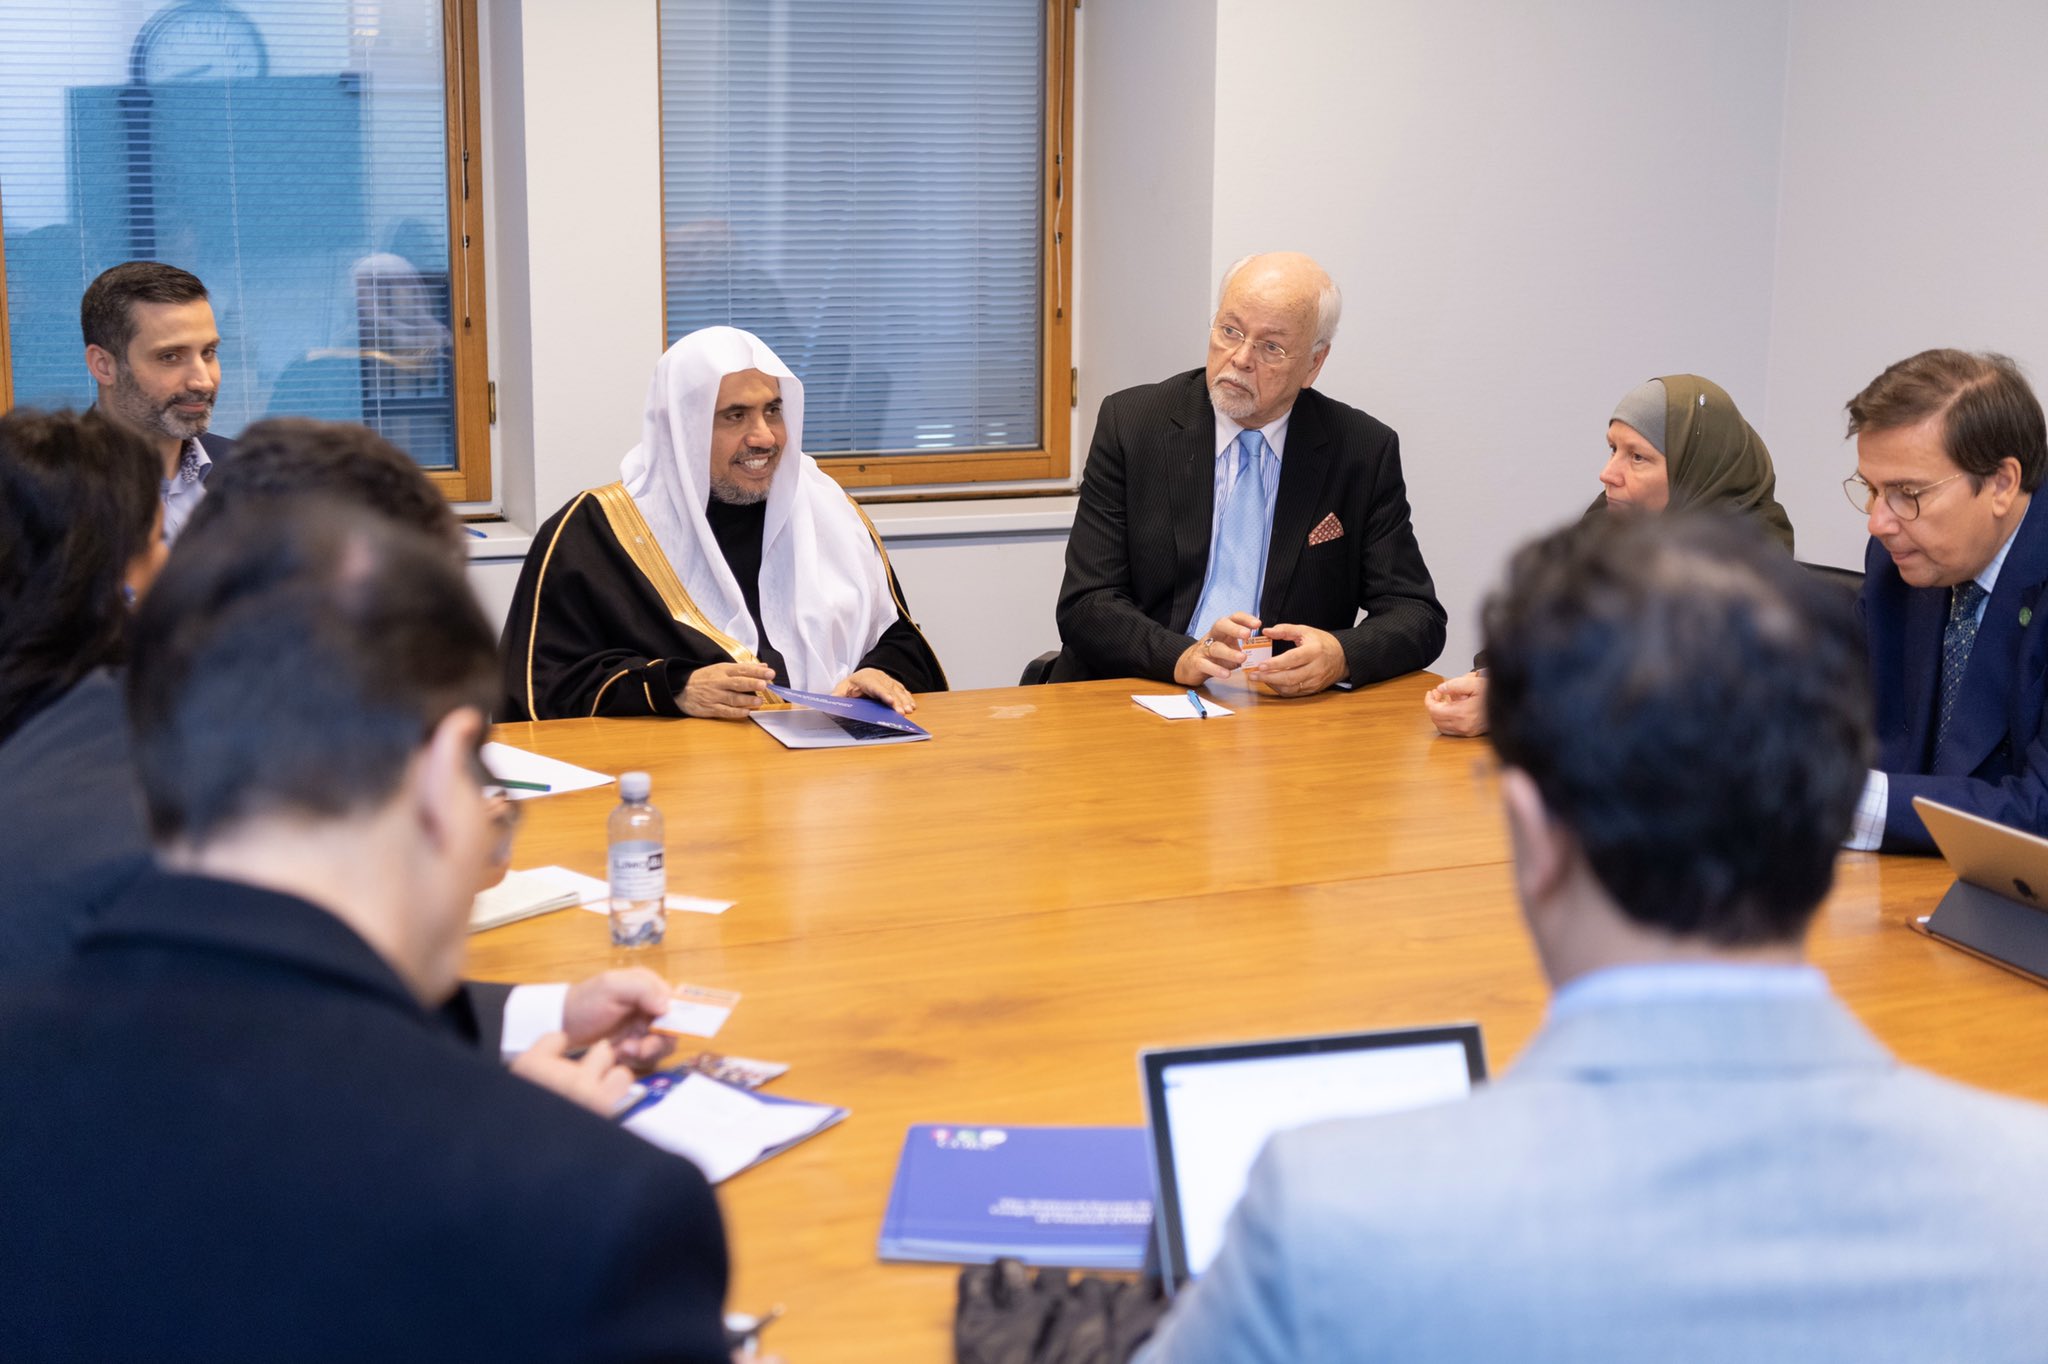 شيخ ڈاکٹر محمد العیسی نے ہلسنکی میں، قومی فورم برائے بین المذاہب اور ثقافتی تعاون فنلینڈ کے صدر اور ممبران کے ساتھ ایک اجلاس میں شرکت کی